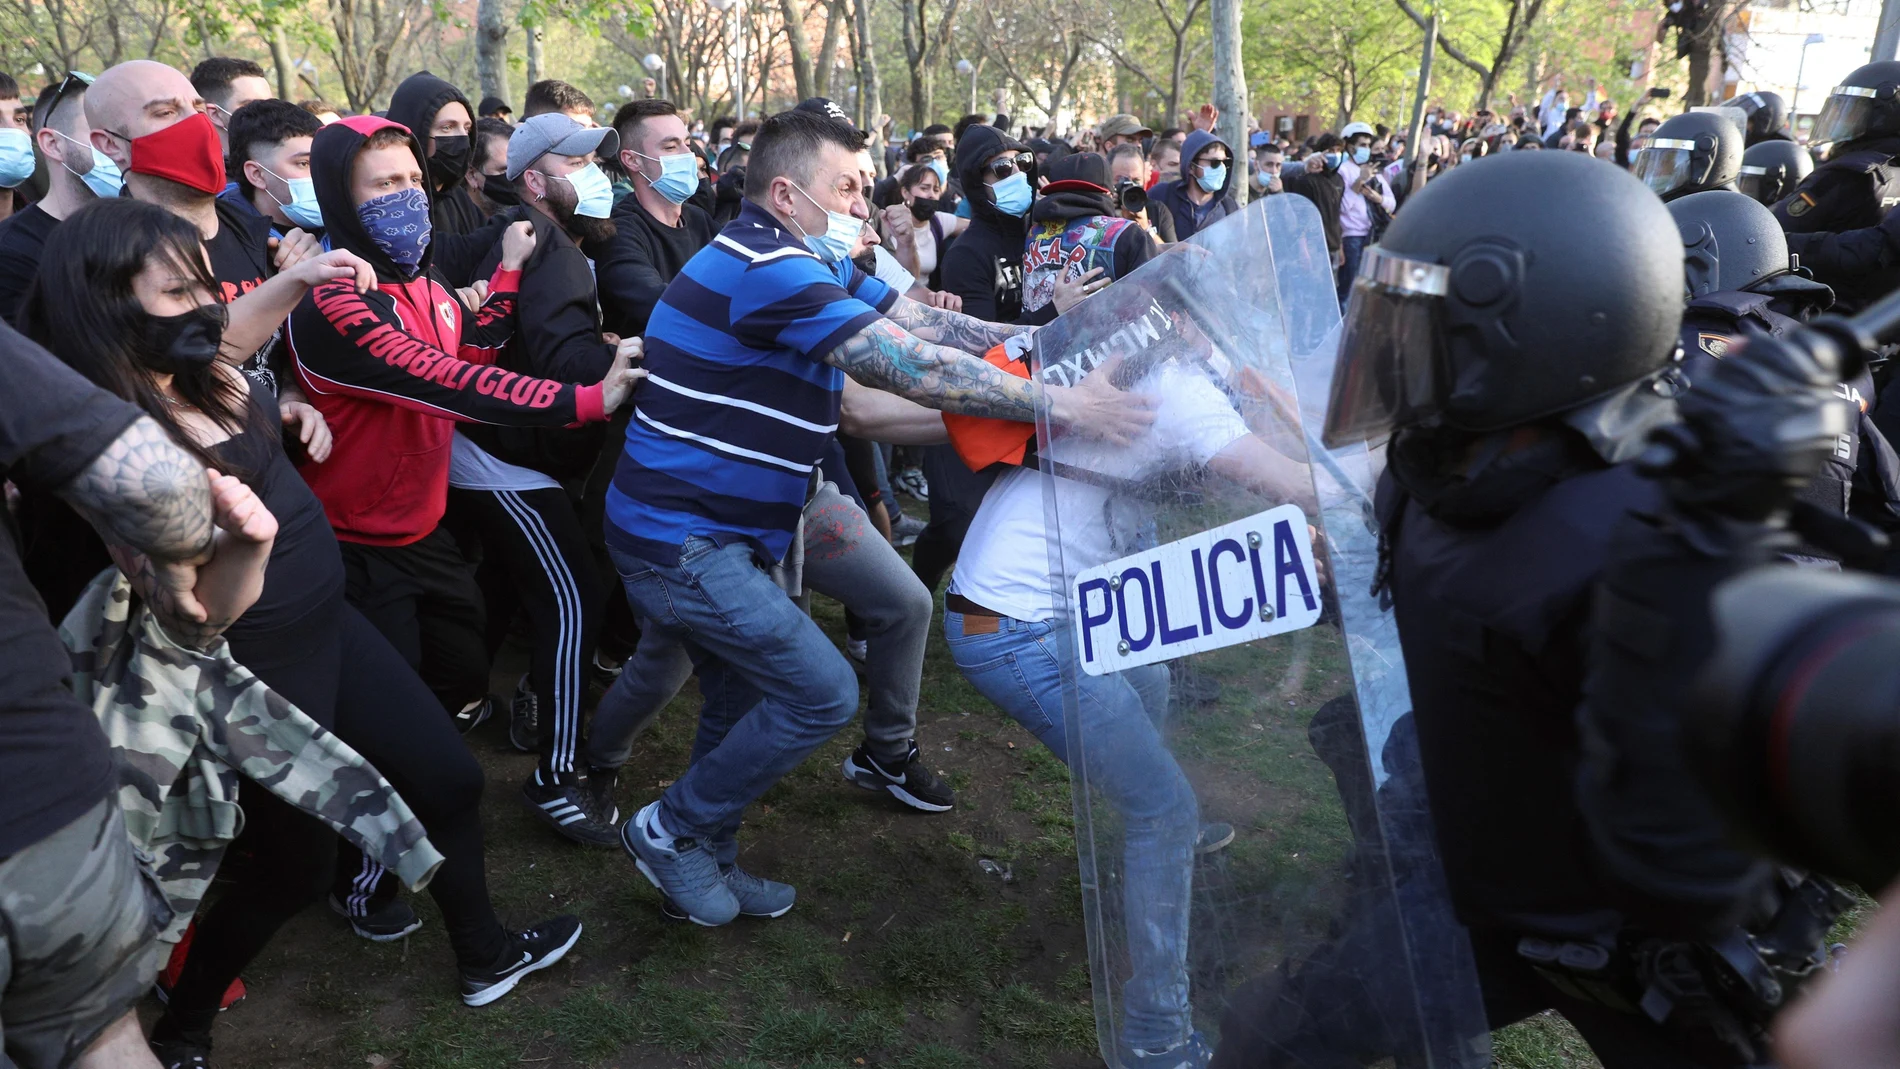 Uno de los "escoltas" vinculado a Podemos que habría alentado a la violencia contra la Polícia en el acto de precampaña de Vox.